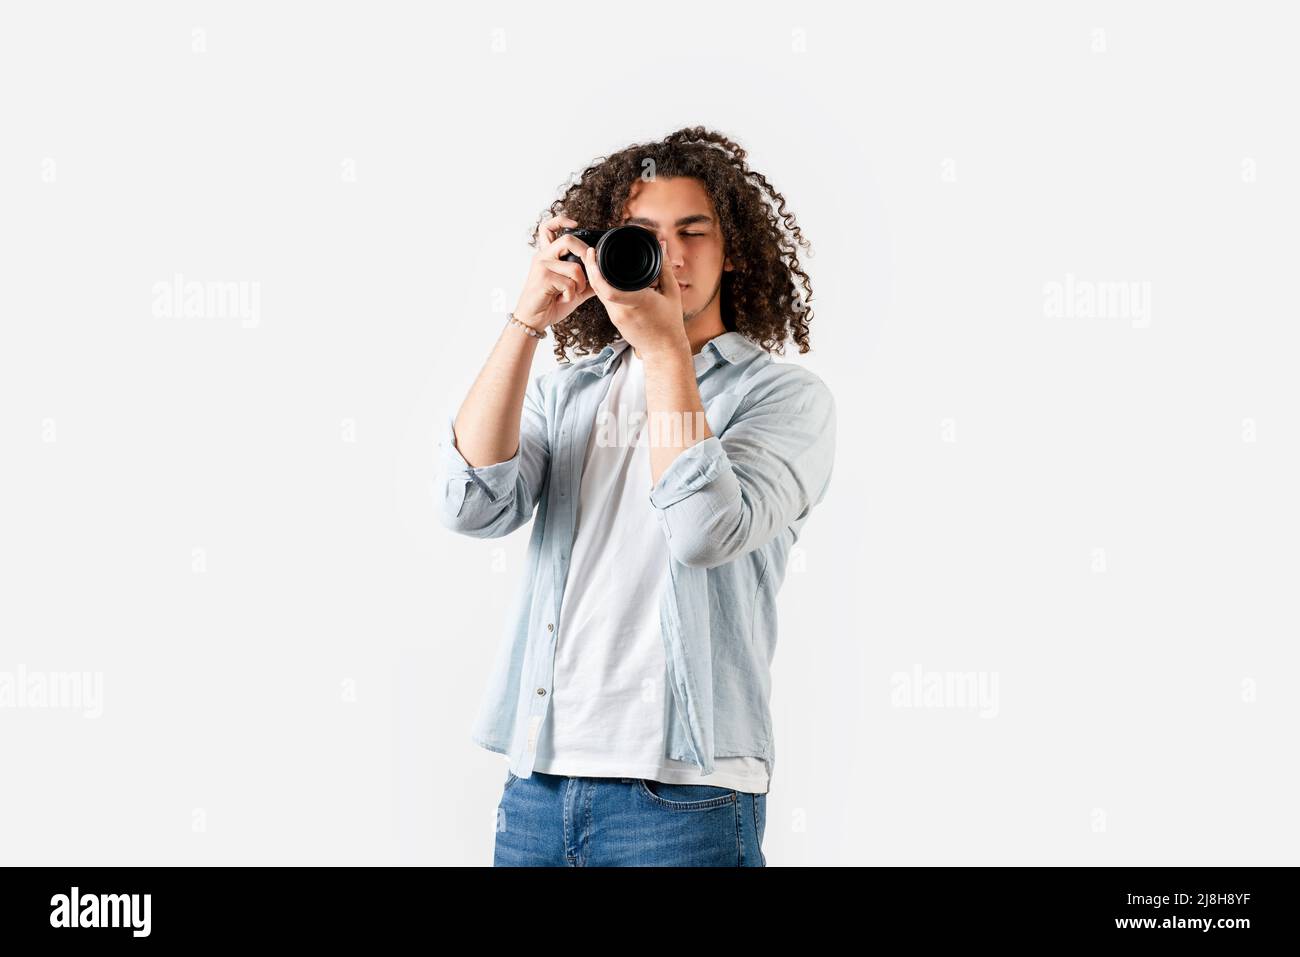 Der junge Mann mit lockigen Haaren schießt mit der Kamera an der Hand. Hobby und Fotografie Konzept. Hochwertige Fotos Stockfoto